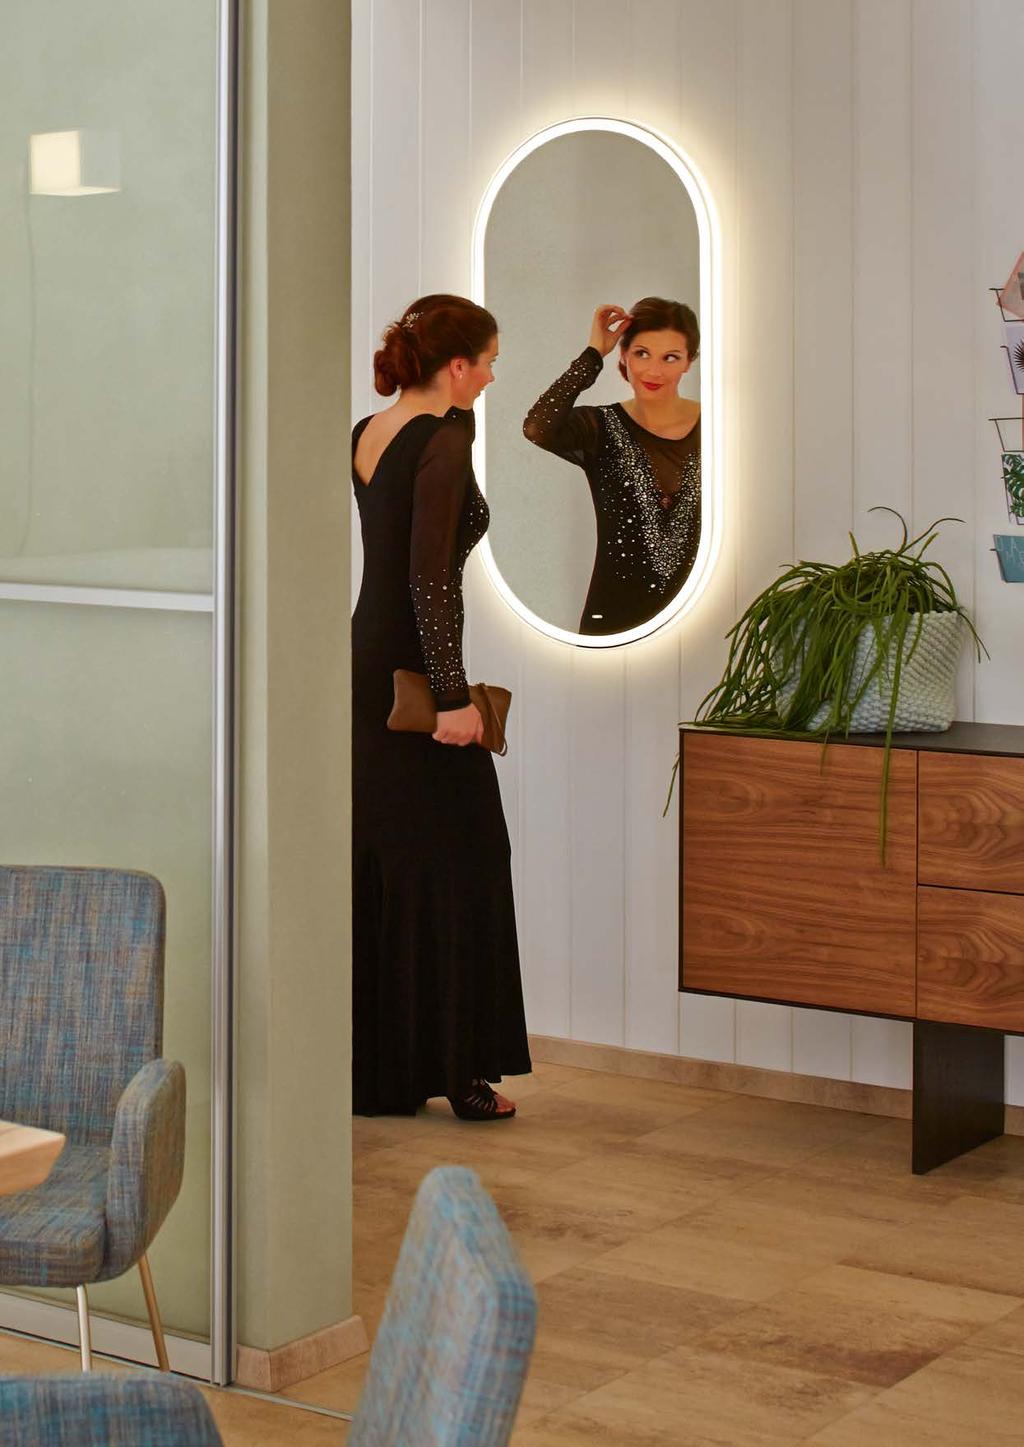 FEELING Lichtspiegel mit Rundungen Illuminated mirrors with rounded